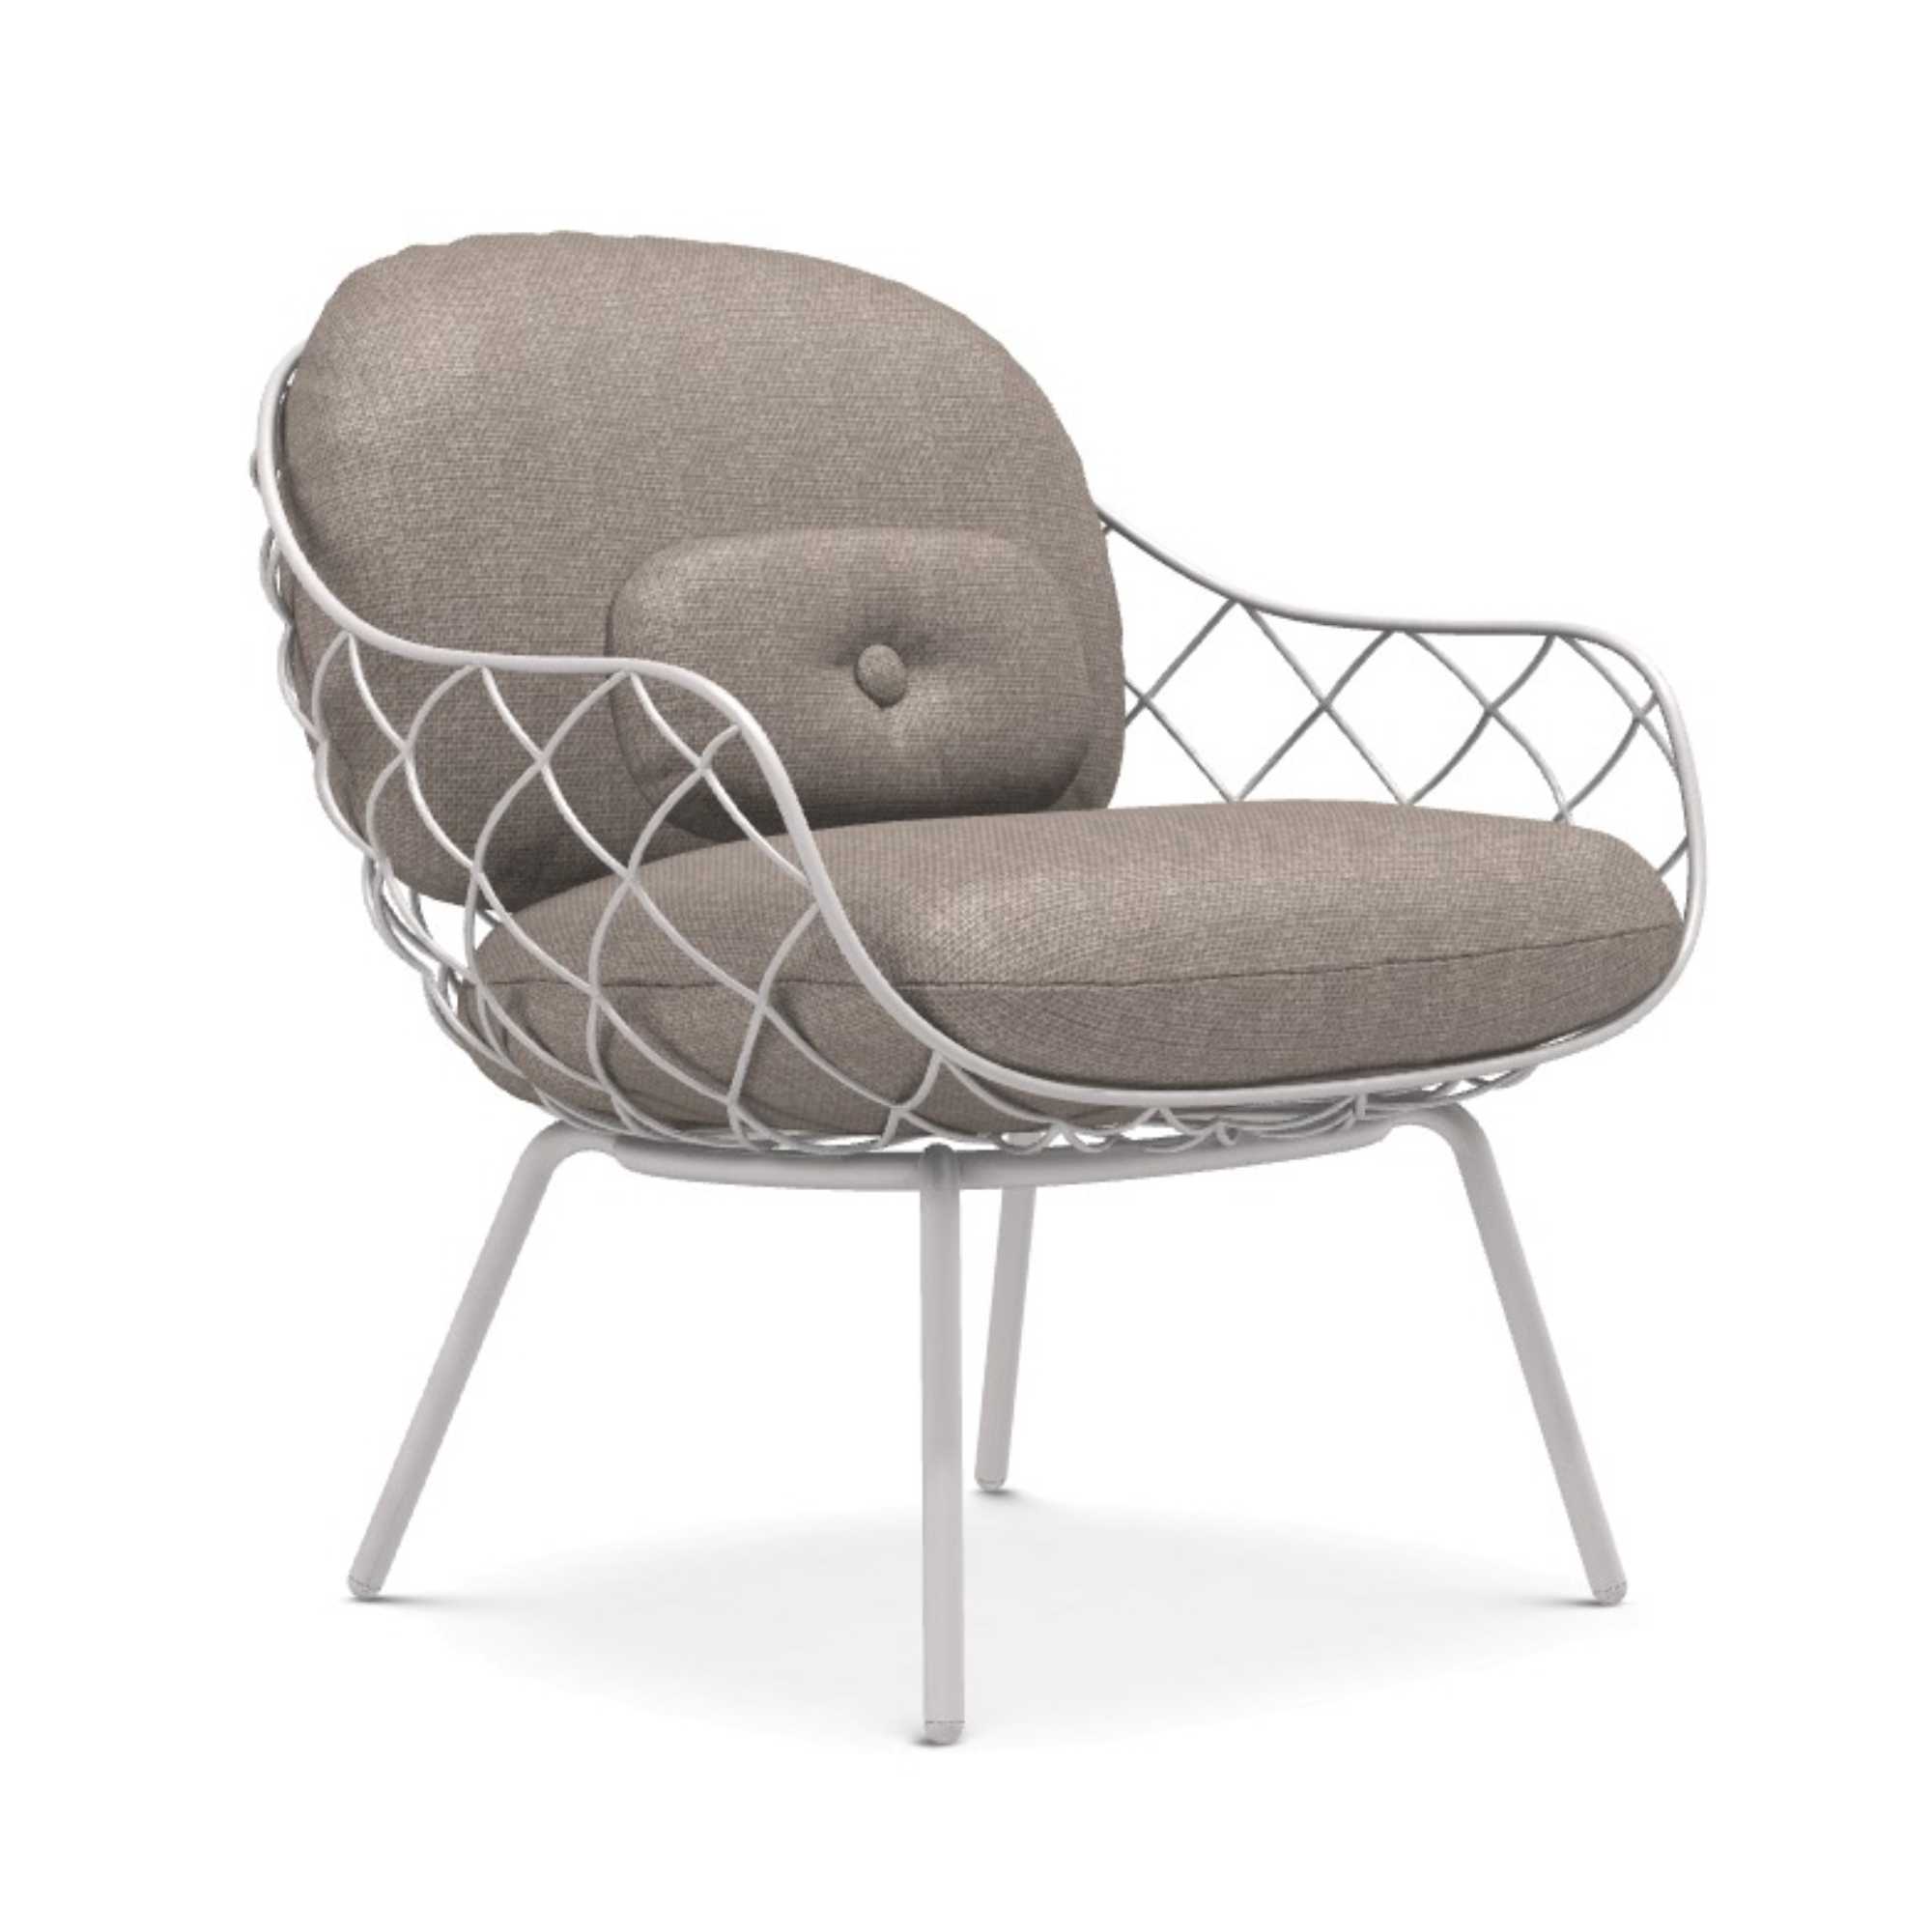 Magis Pina lounge chair, grey melange/ white (outdoor)